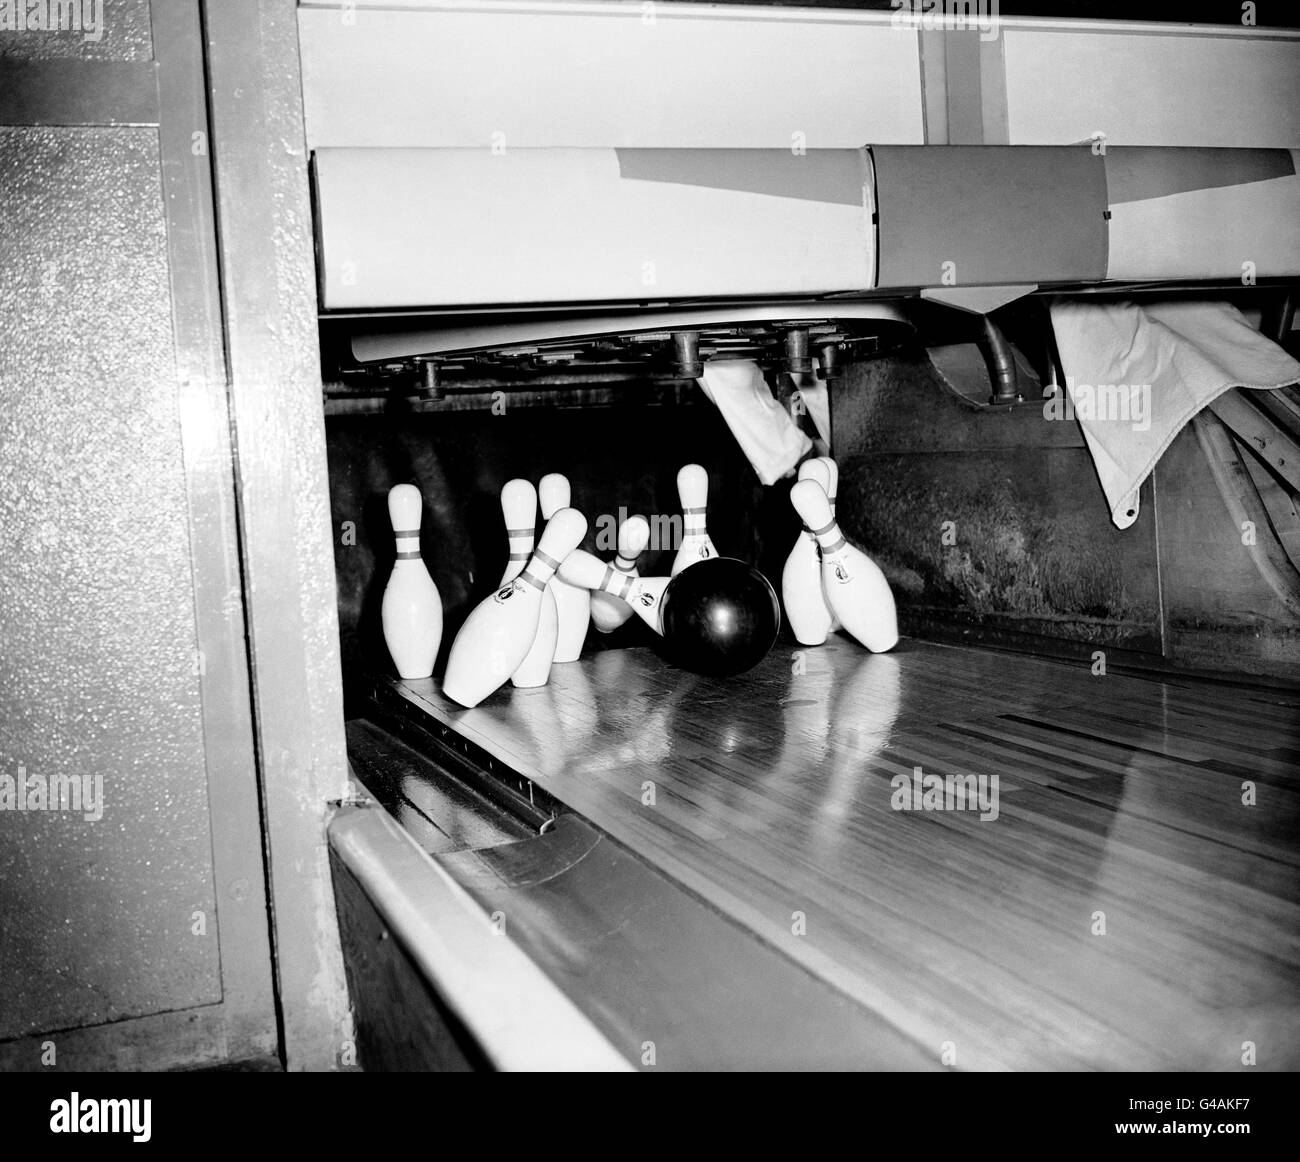 Ten pin Bowling - base dell'aeronautica degli Stati Uniti - Ruislip. La palla di gomma piena da 16lb invia i pin che volano durante una partita di bowling a dieci birilli. Foto Stock